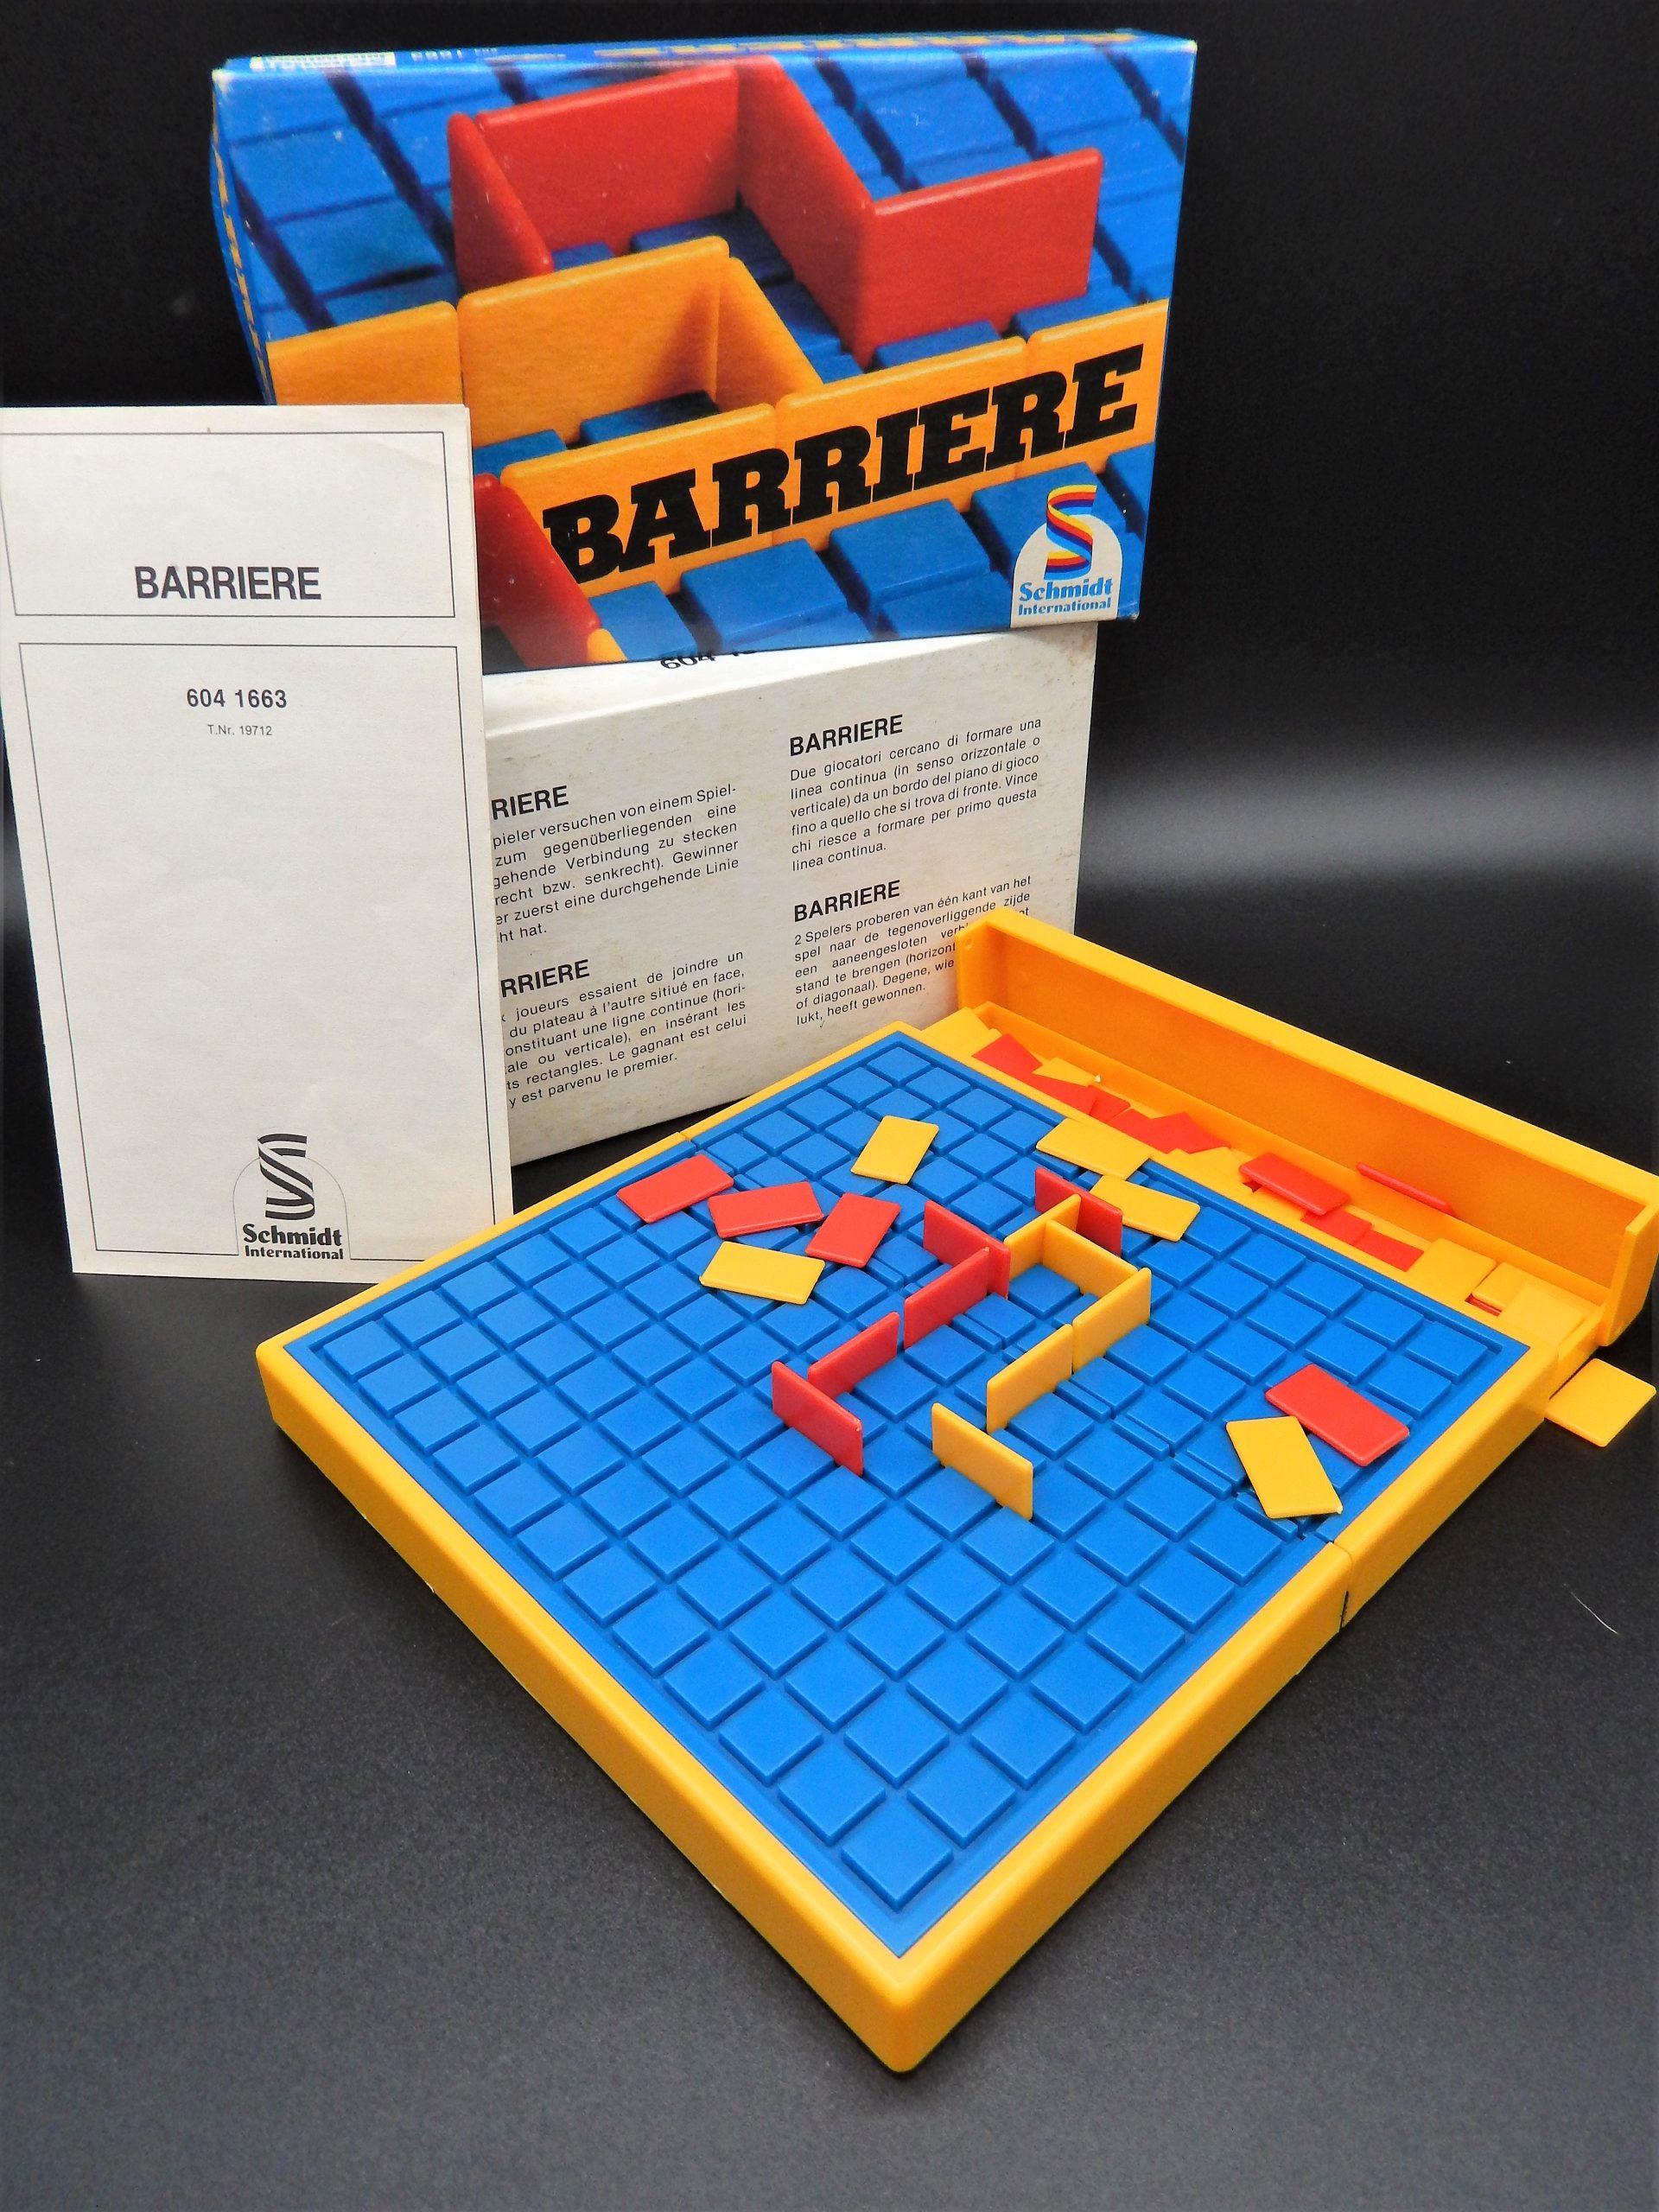 Barriere, tactisch spel voor 2 personen | What's New Today?